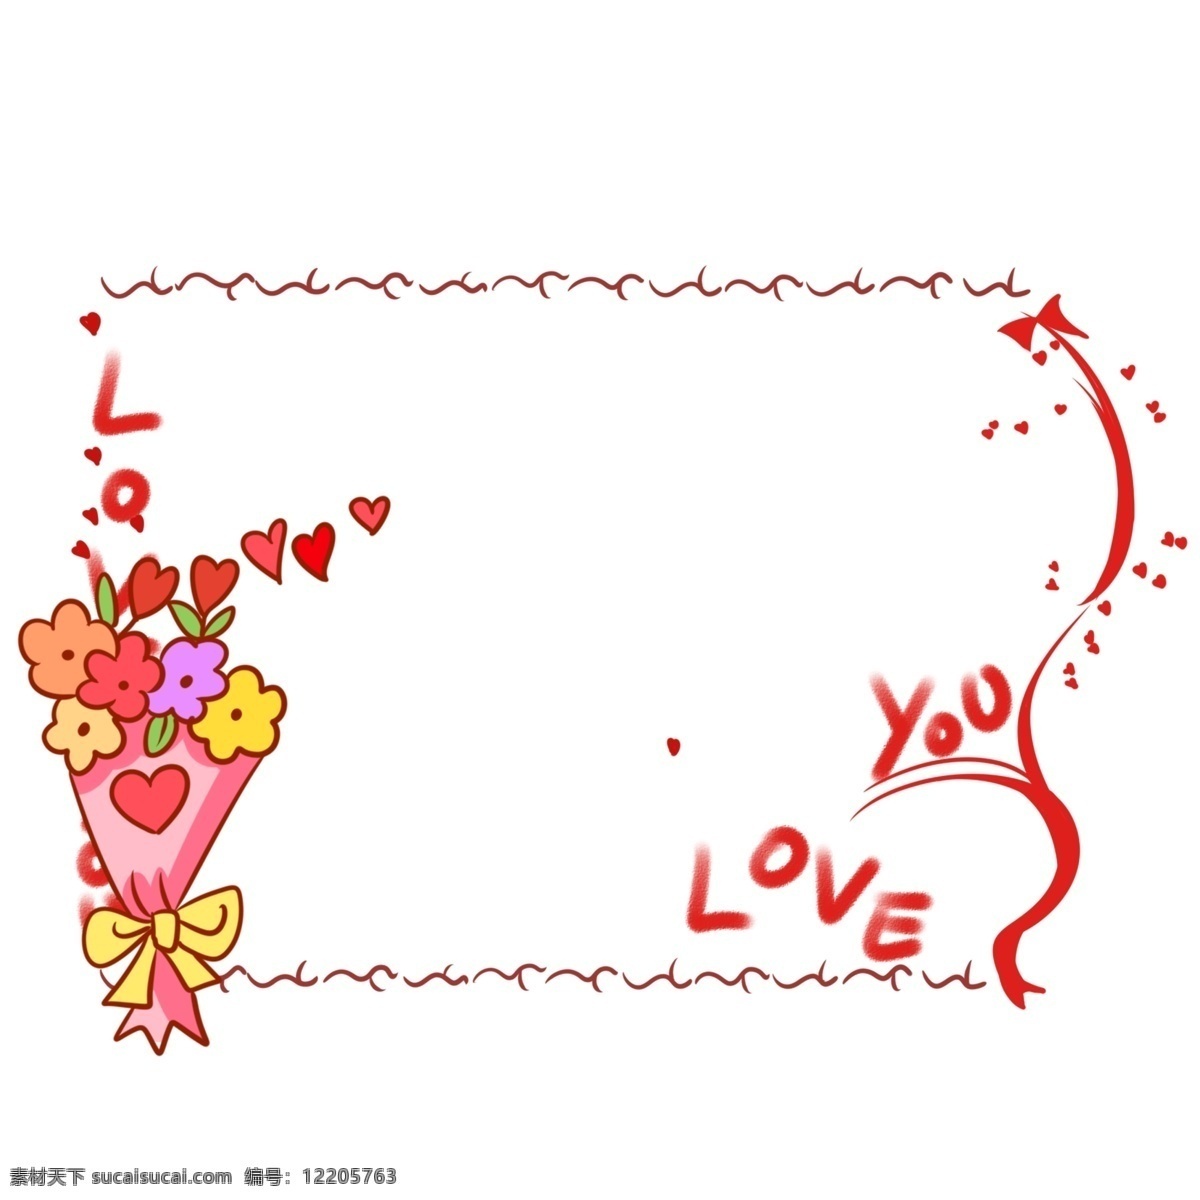 鲜花 爱情 边框 插画 彩色的鲜花 漂亮 手绘爱情边框 可爱